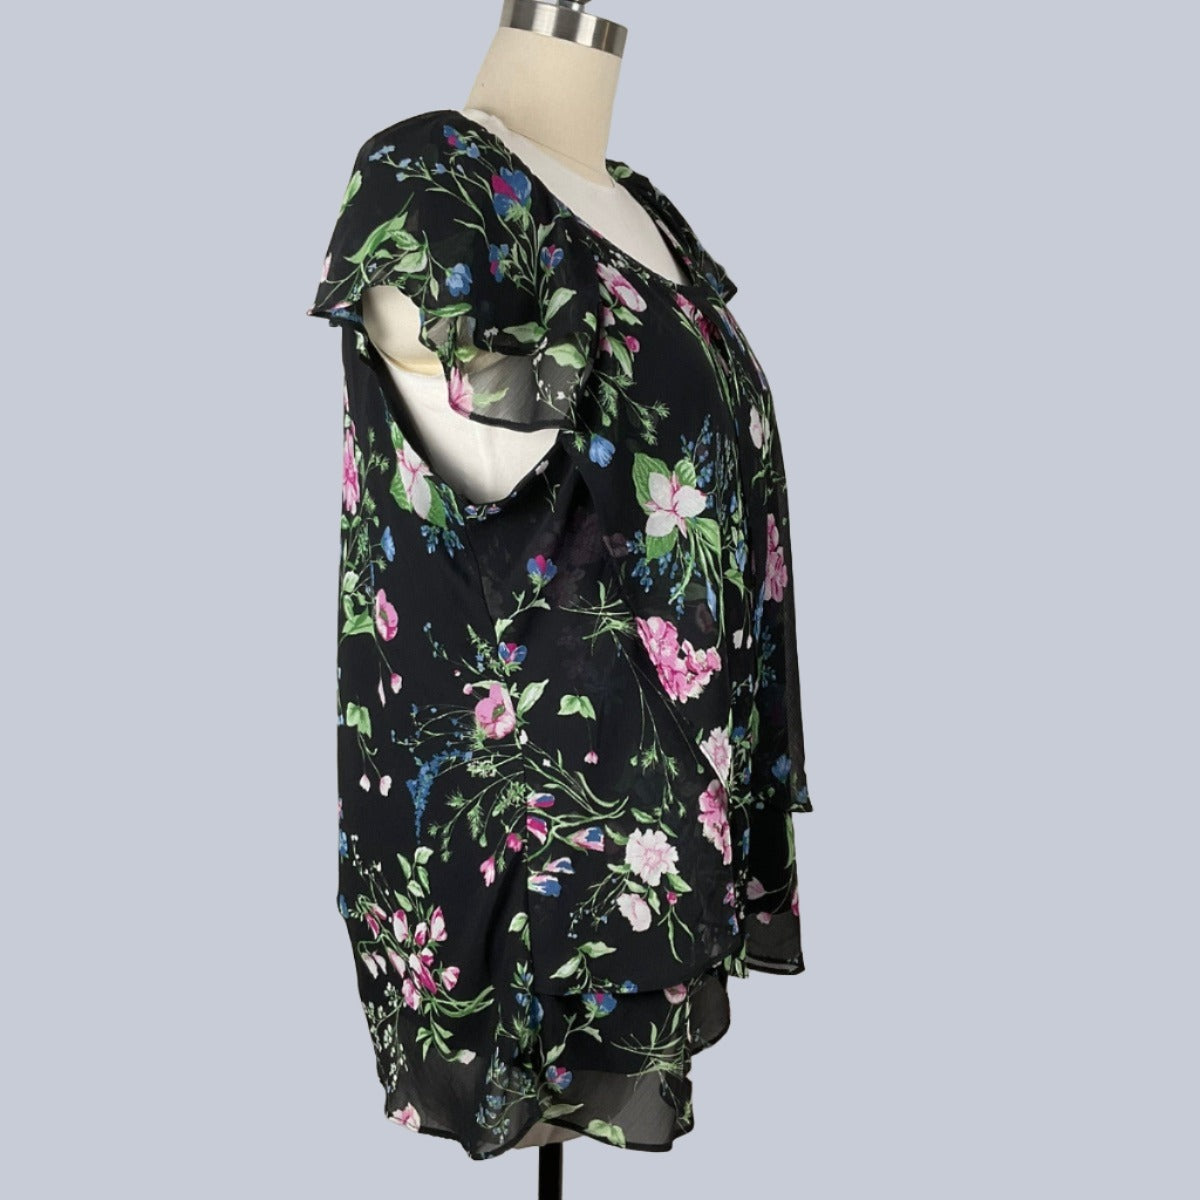 Women's Black Floral Blouse Size 2X - Left Side View